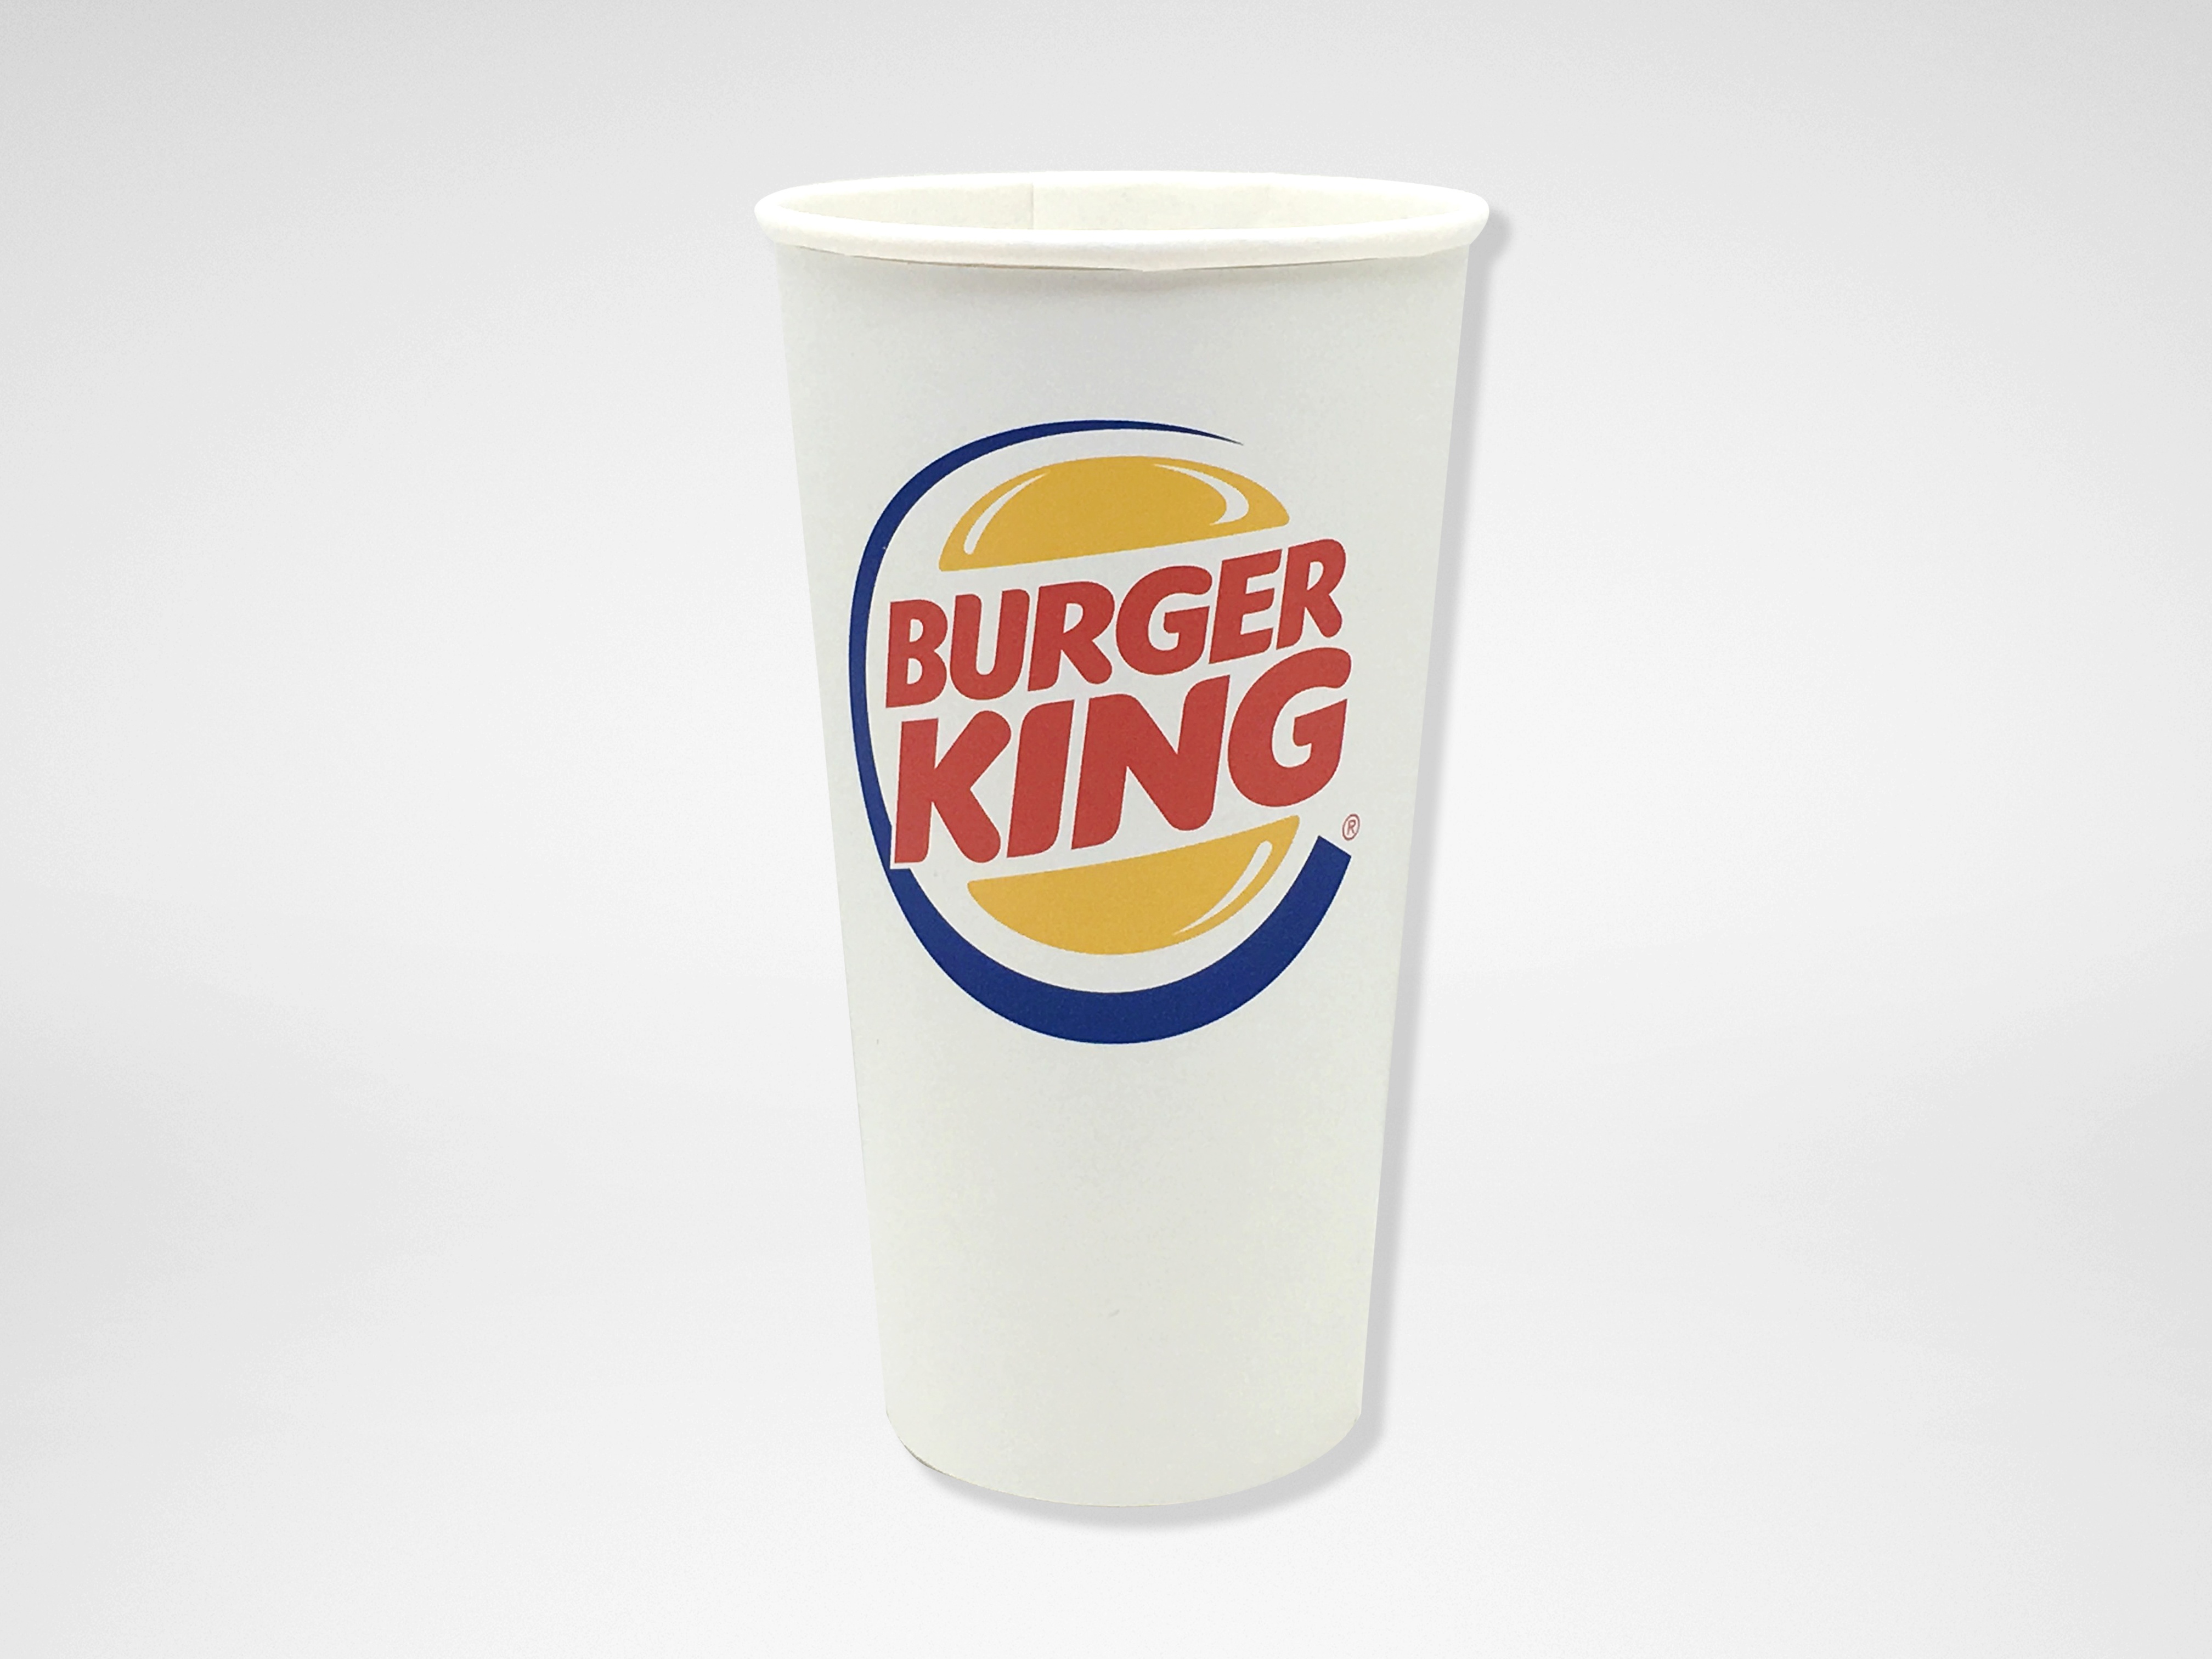 https://0901.nccdn.net/4_2/000/000/076/de9/Burger-King-4032x3024.jpg